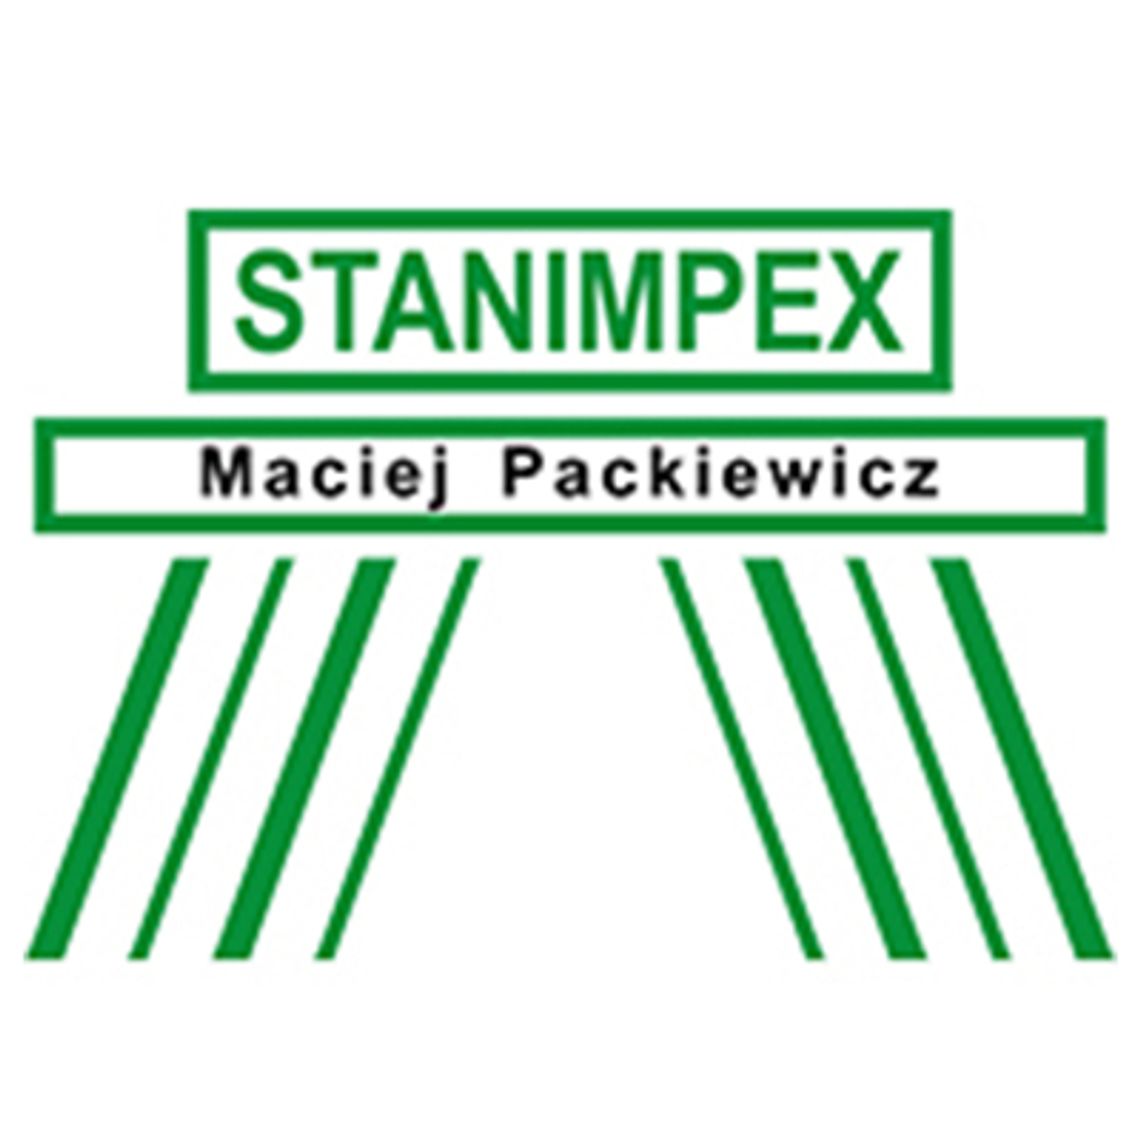 Stanimpex - producent opryskiwaczy rolniczych